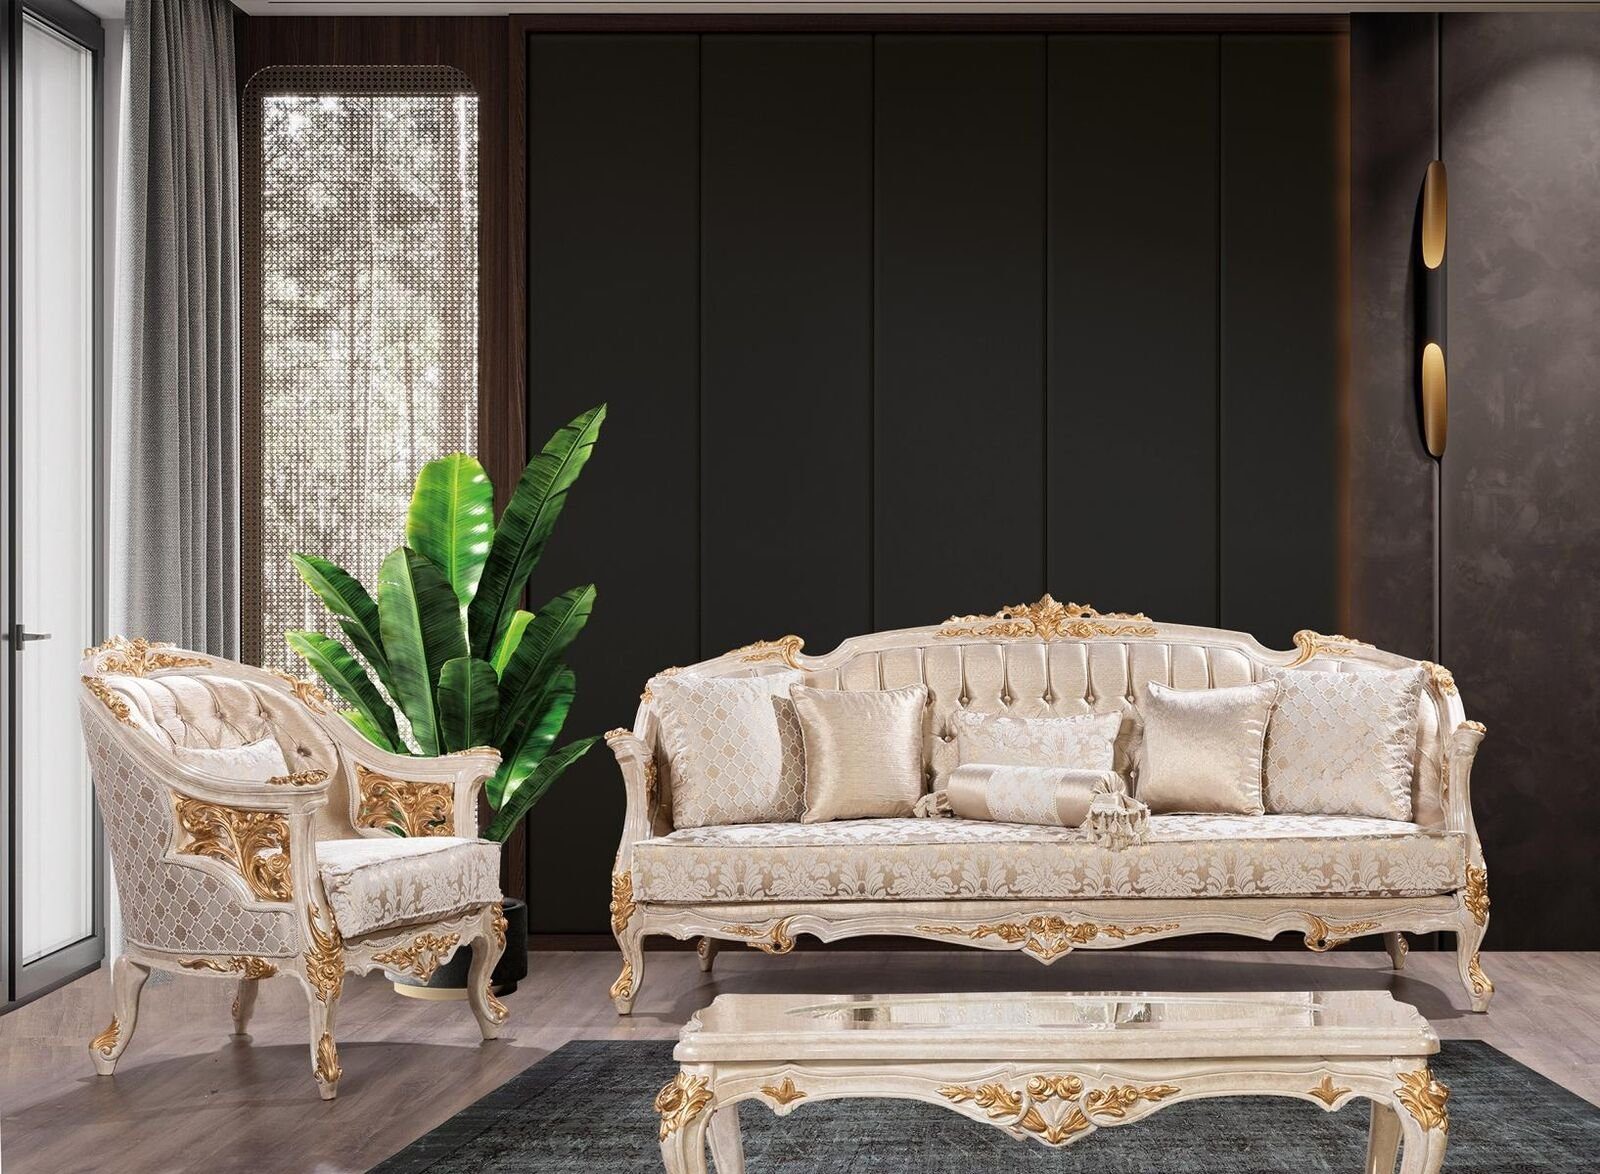 JVmoebel Sofa Luxus Chesterfield Sofagarnitur 3+1 Sitzer Klassische Barock Sofas, 2 Teile, Made In Europe